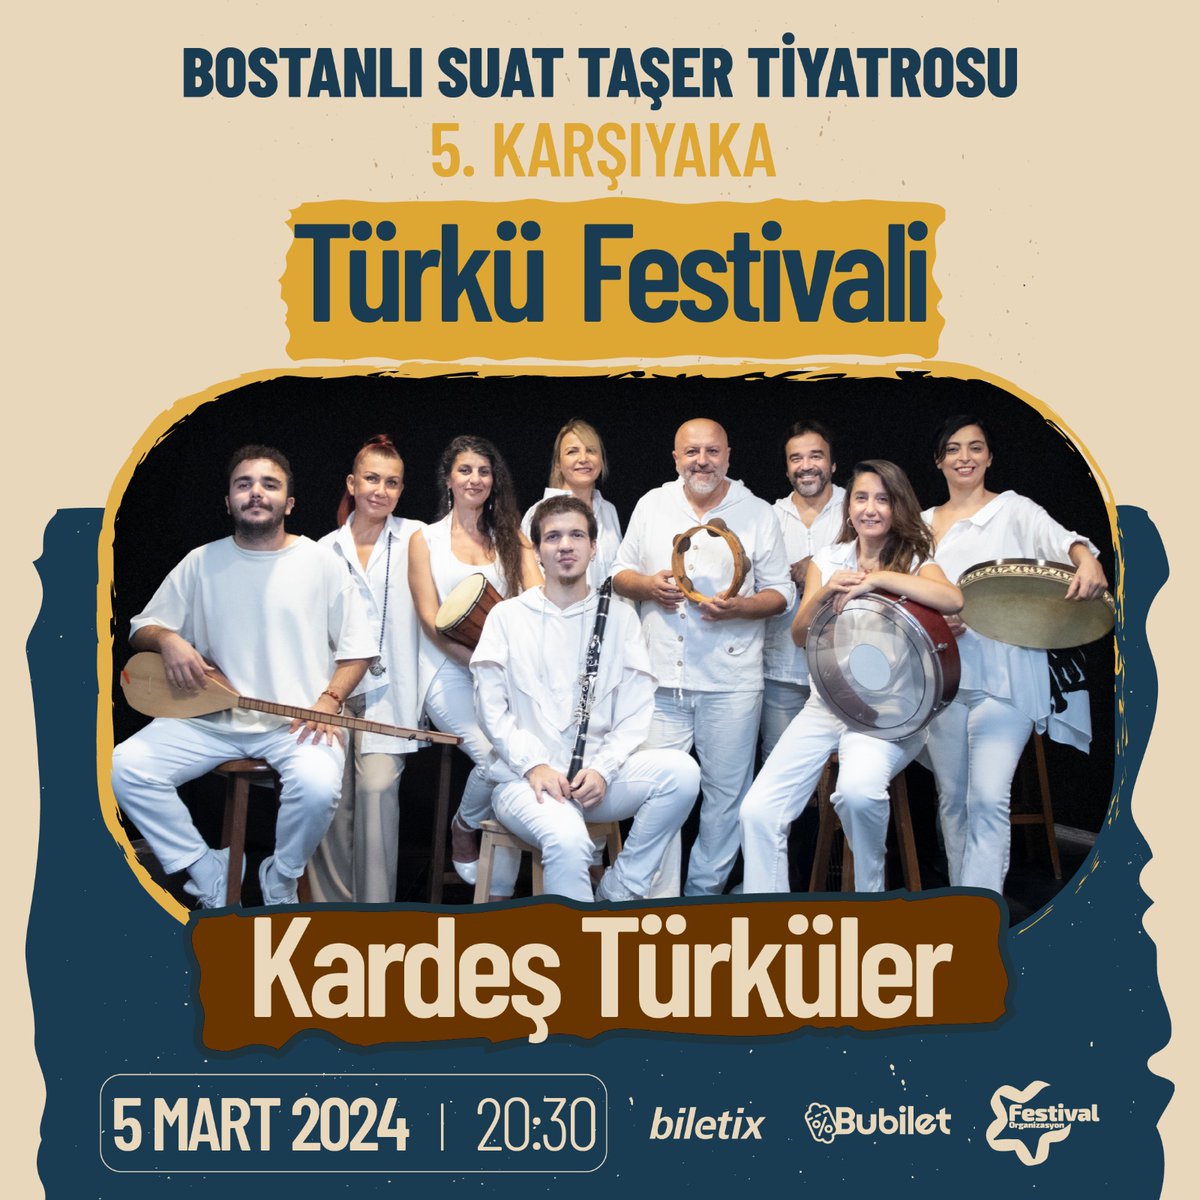 5 Mart İzmir Karşıyaka🕊️ Bostanlı Suat Taşer Tiyatrosu 5. Karşıyaka Festivali #kardestürküler #izmir #karşıyaka #konser #bostanlısuattaşertiyatrosu